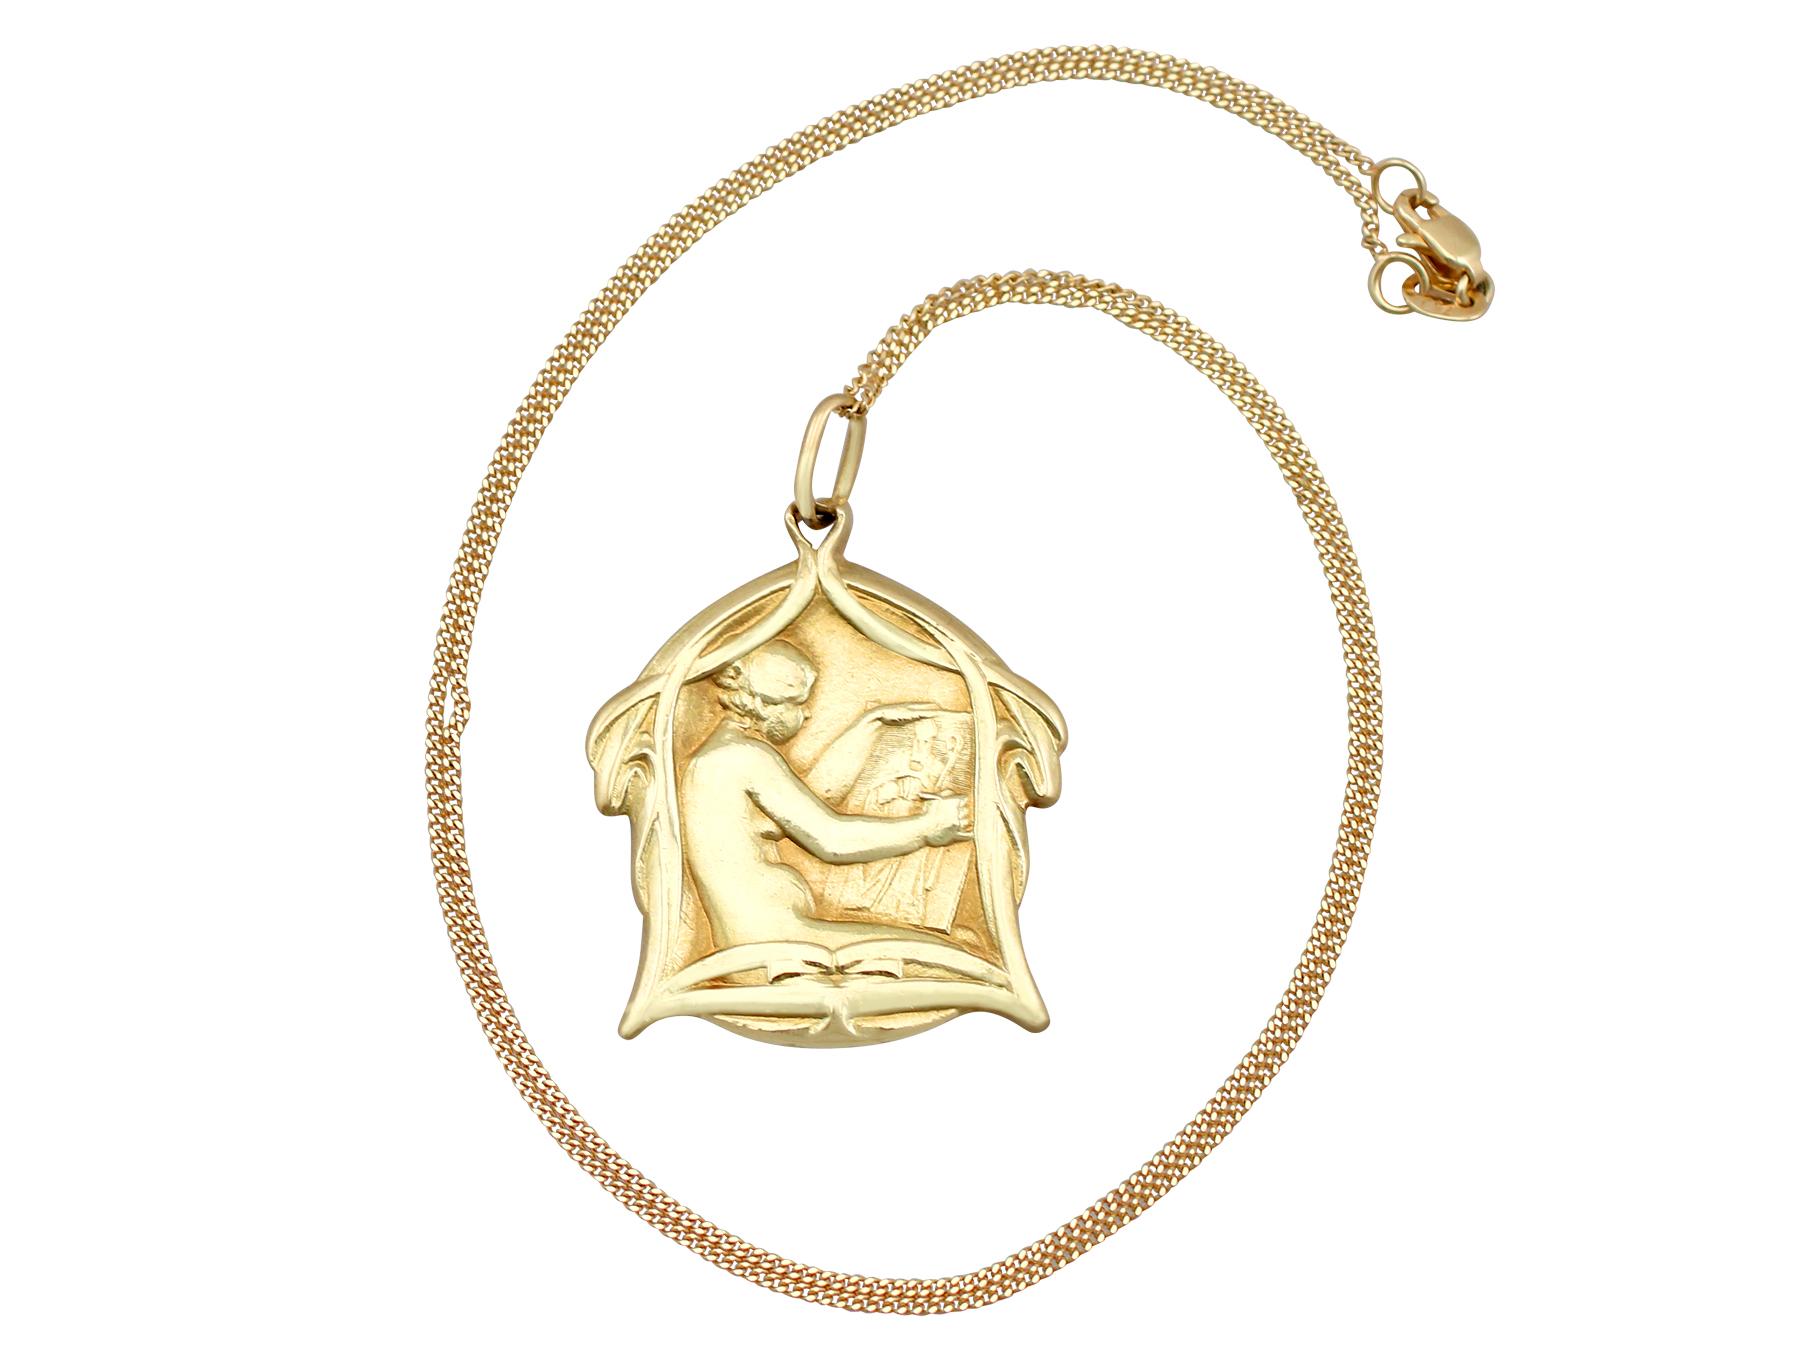 Impressionnant pendentif et chaîne Art nouveau en or jaune 18 carats de la Belgique par Fernan Du Boi, qui fait partie de nos diverses collections de bijoux anciens et de bijoux de succession.

Ce pendentif belge ancien, fin et impressionnant, a été